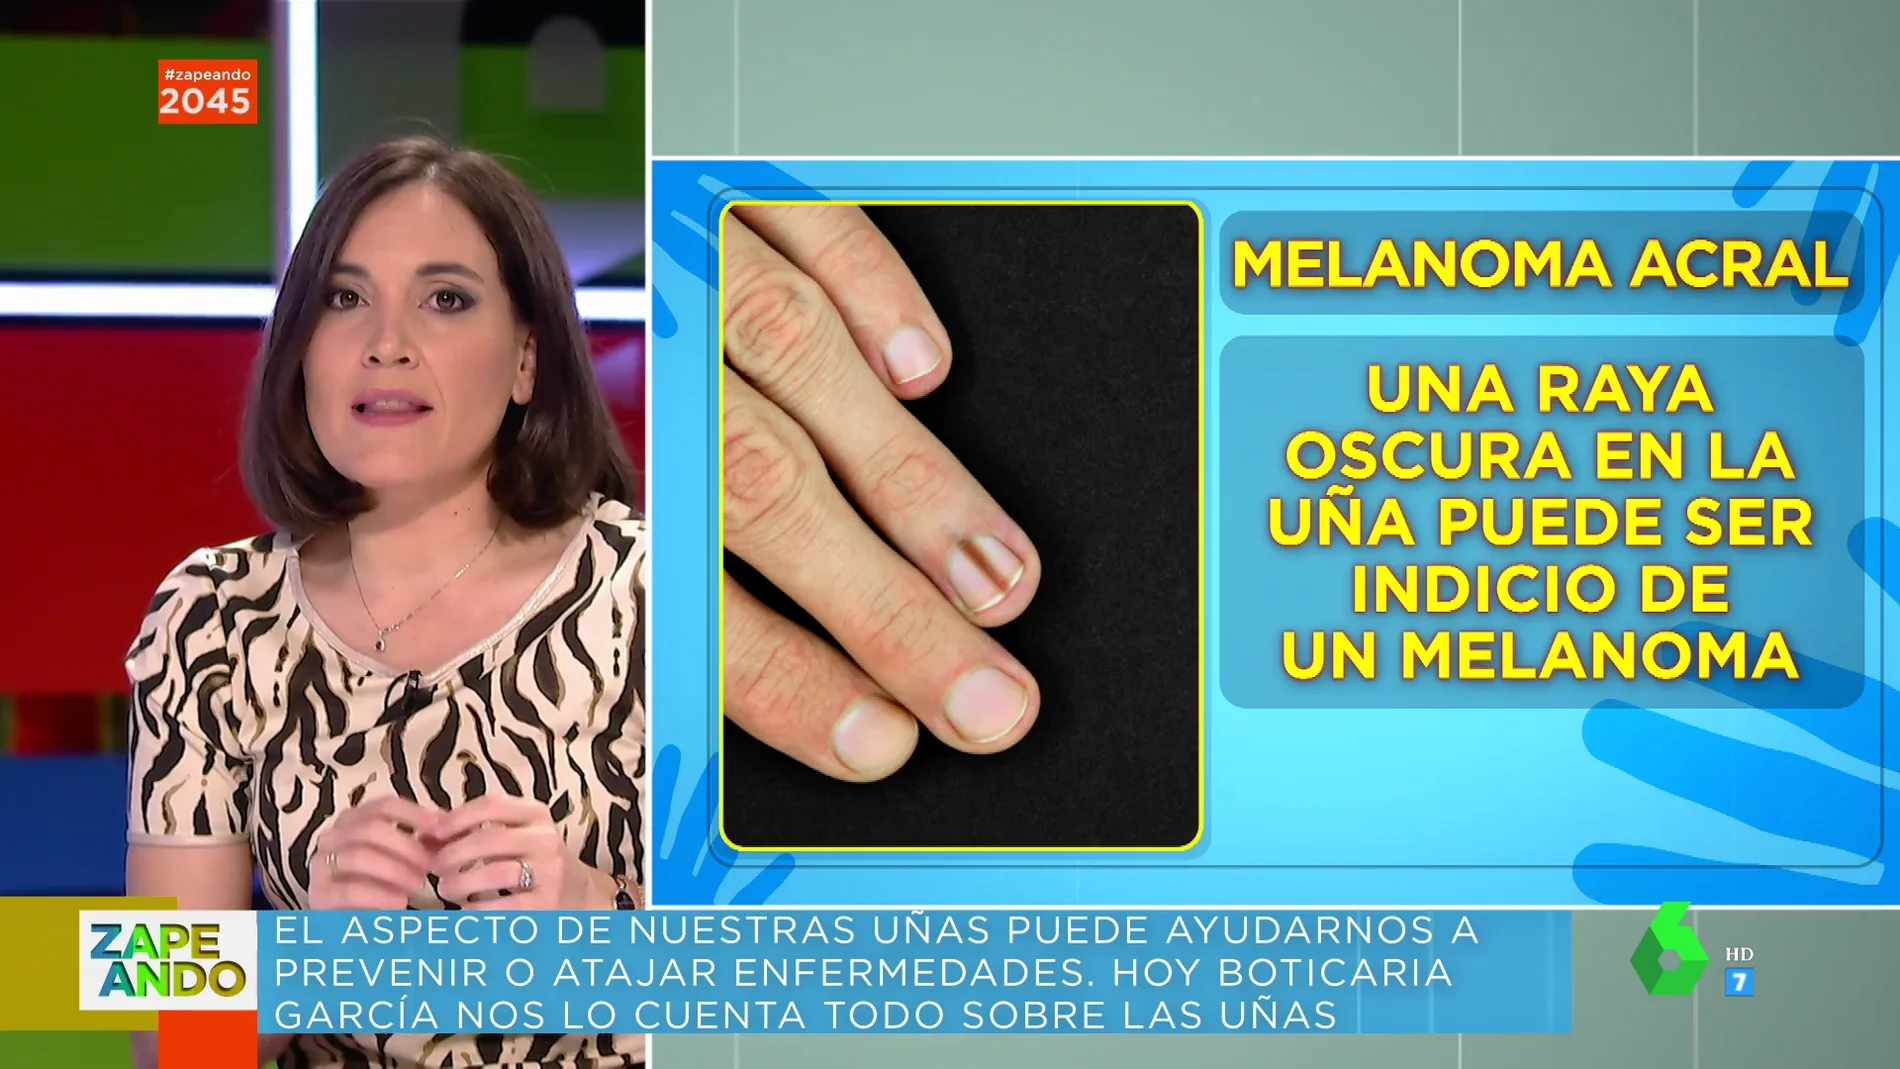 Boticaria García advierte sobre las uñas con una raya oscura: "Si te sale, ve al dermatólogo para un control de cáncer de piel"